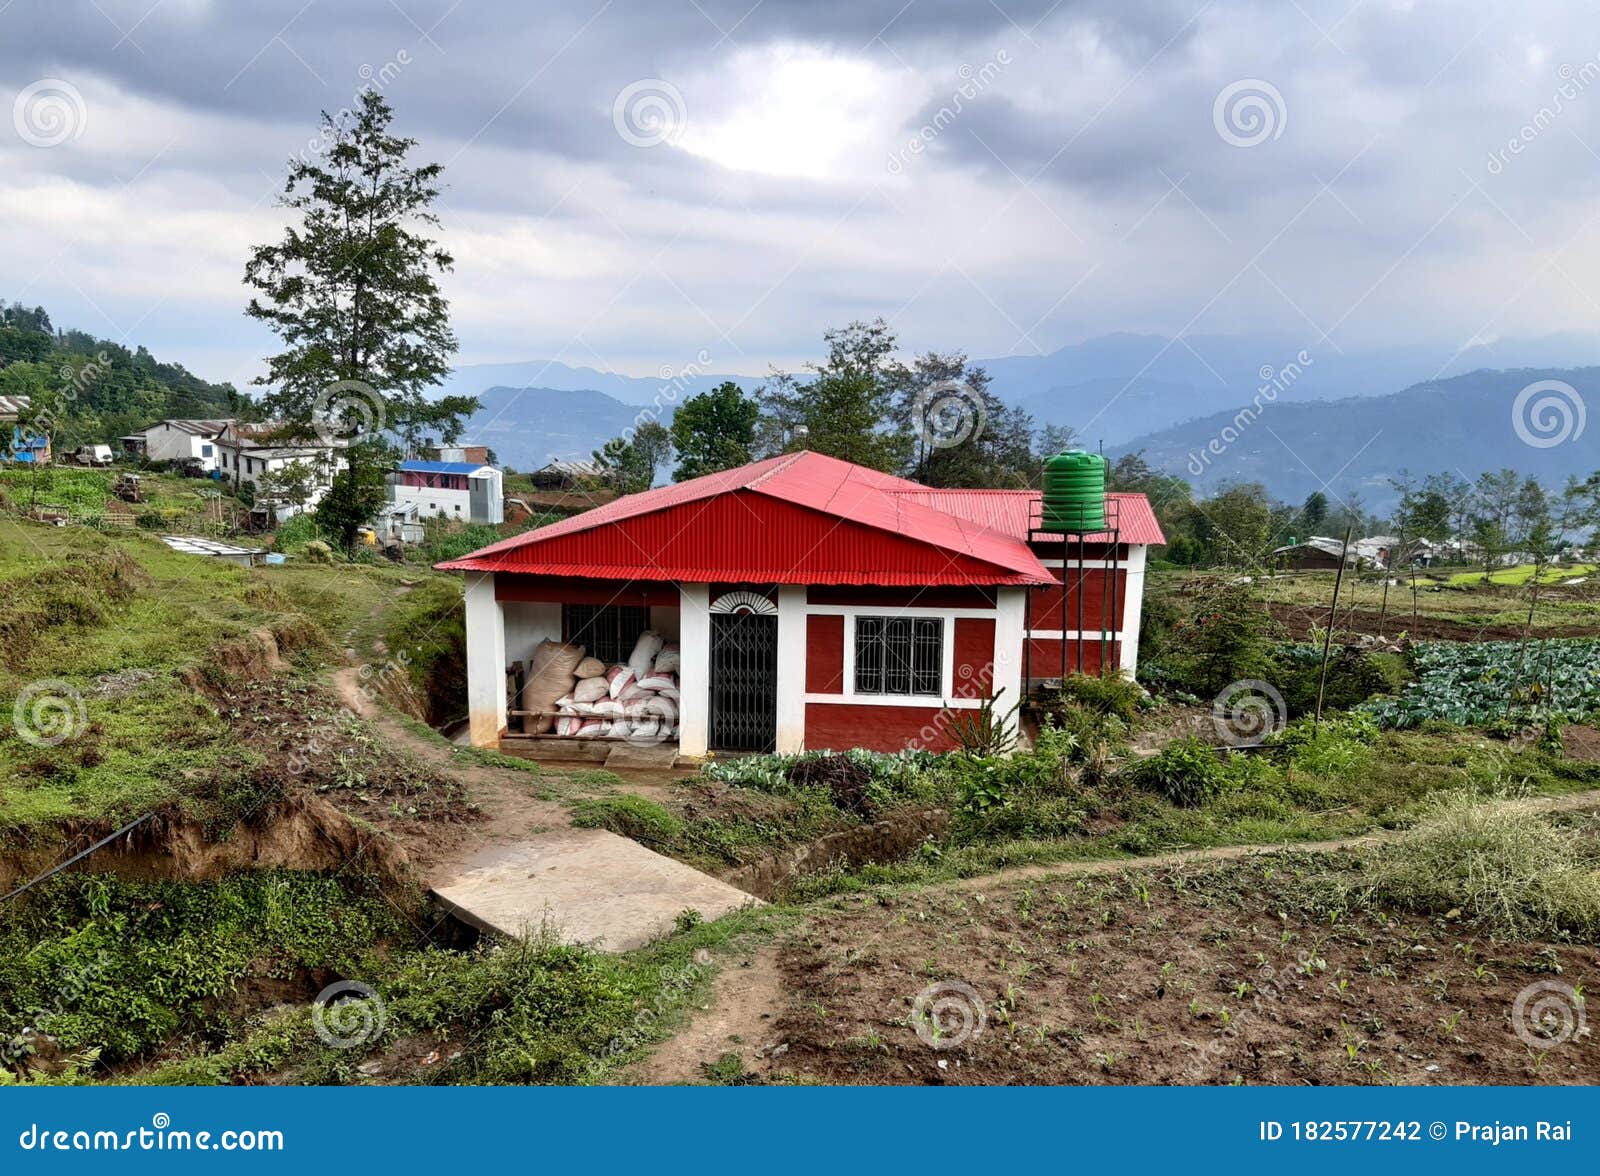 A Beautiful House of Nepali Village Stock Photo - Image of popular ...